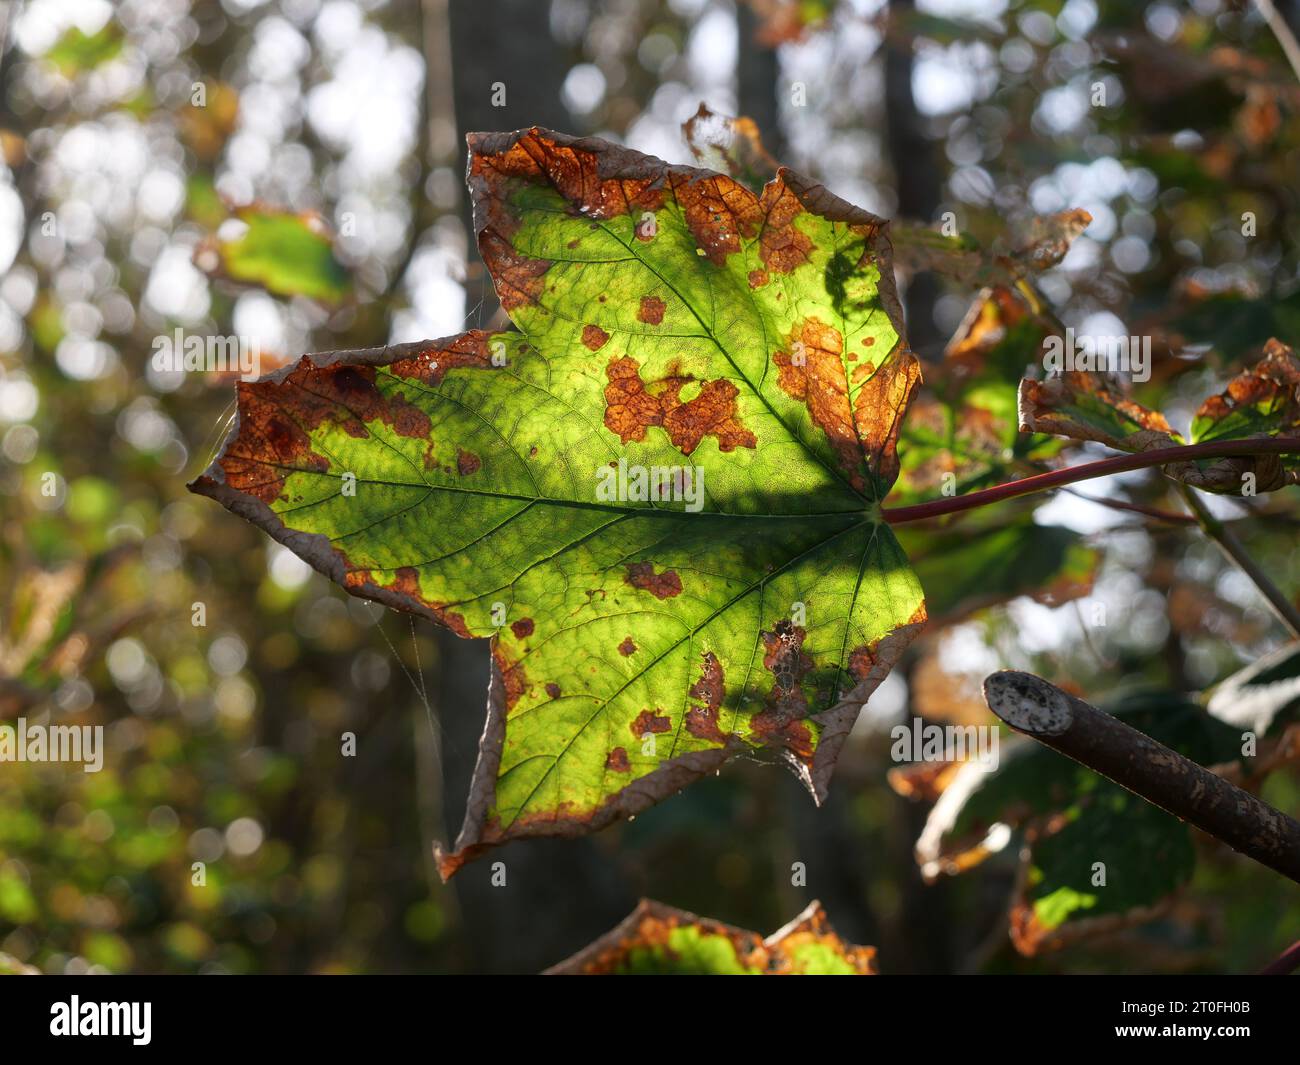 Una foglia d'acero appassita, inondata di luce solare, crea un motivo grazioso e mette in mostra la bellezza dell'autunno. Foto Stock